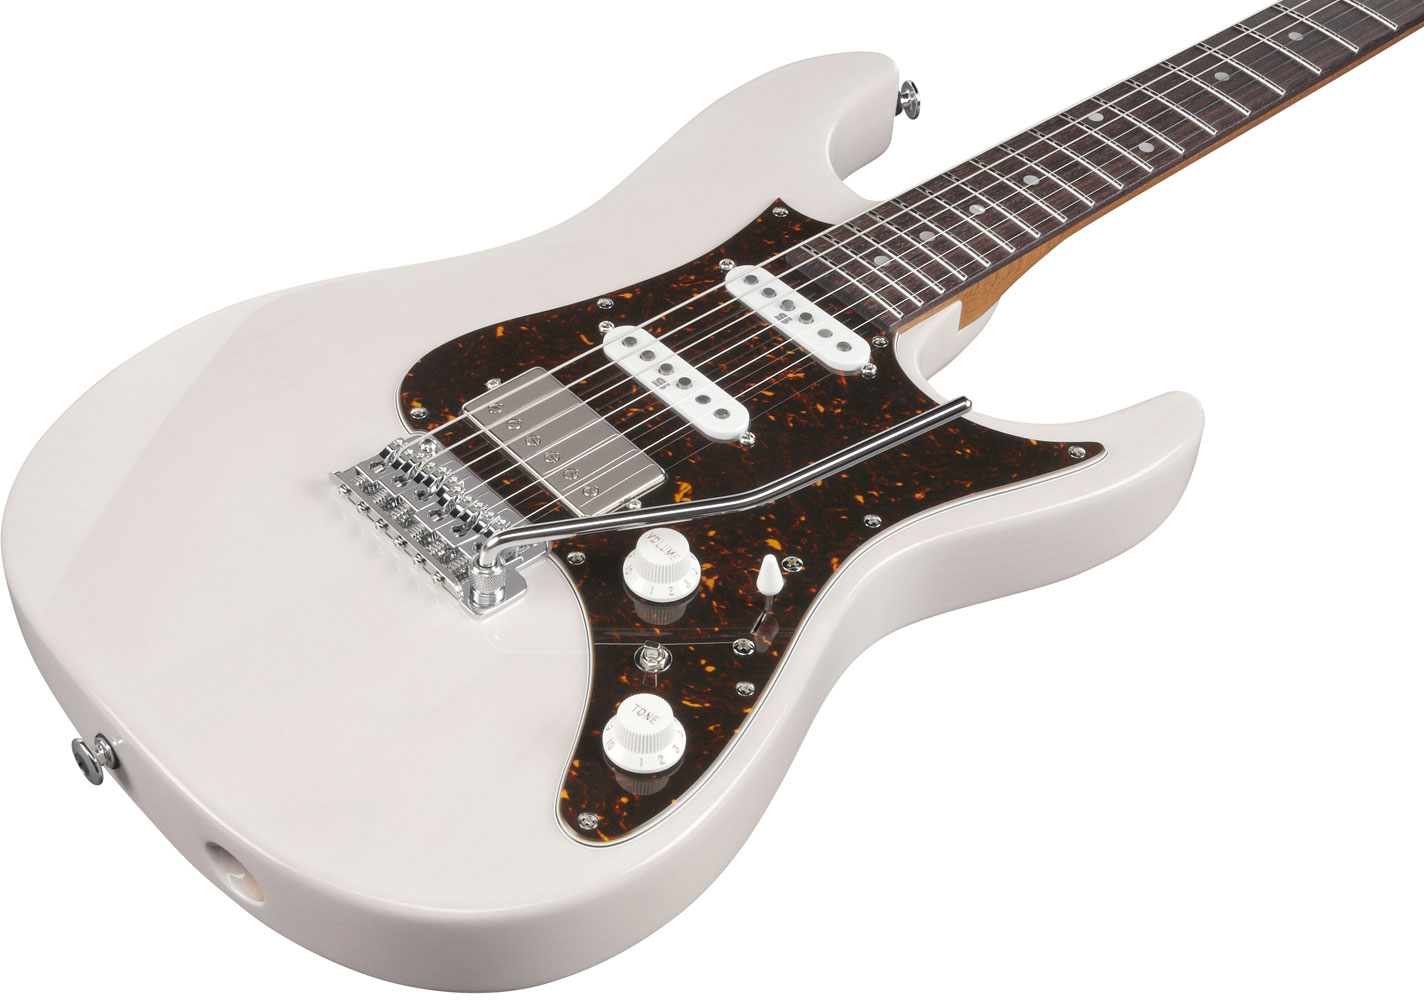 Ibanez Az2204n Awd Prestige Jap Hss Seymour Duncan Trem Rw - Antique White Blonde - Guitarra eléctrica con forma de str. - Variation 1